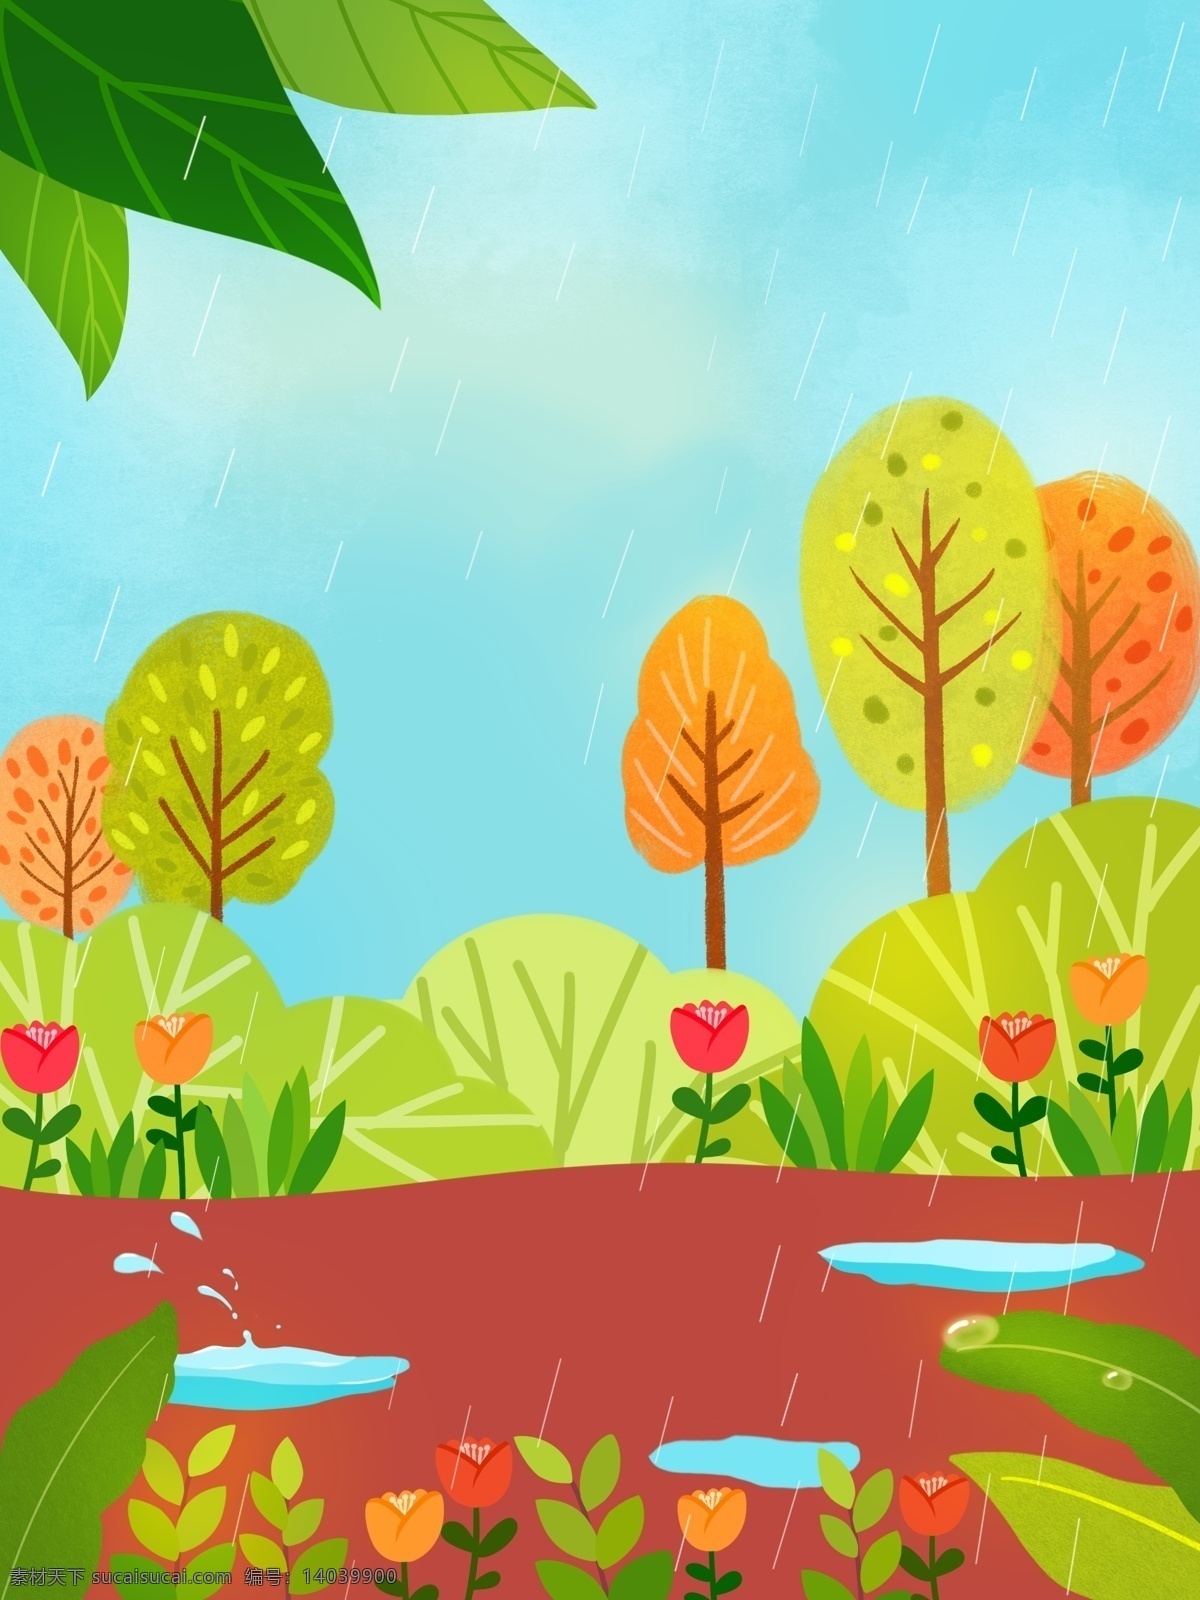 雨季 唯美 小 清晰 植物 花卉 背景 卡通 手绘 清新背景 森林背景 树林背景 插画背景 风景背景 花卉背景